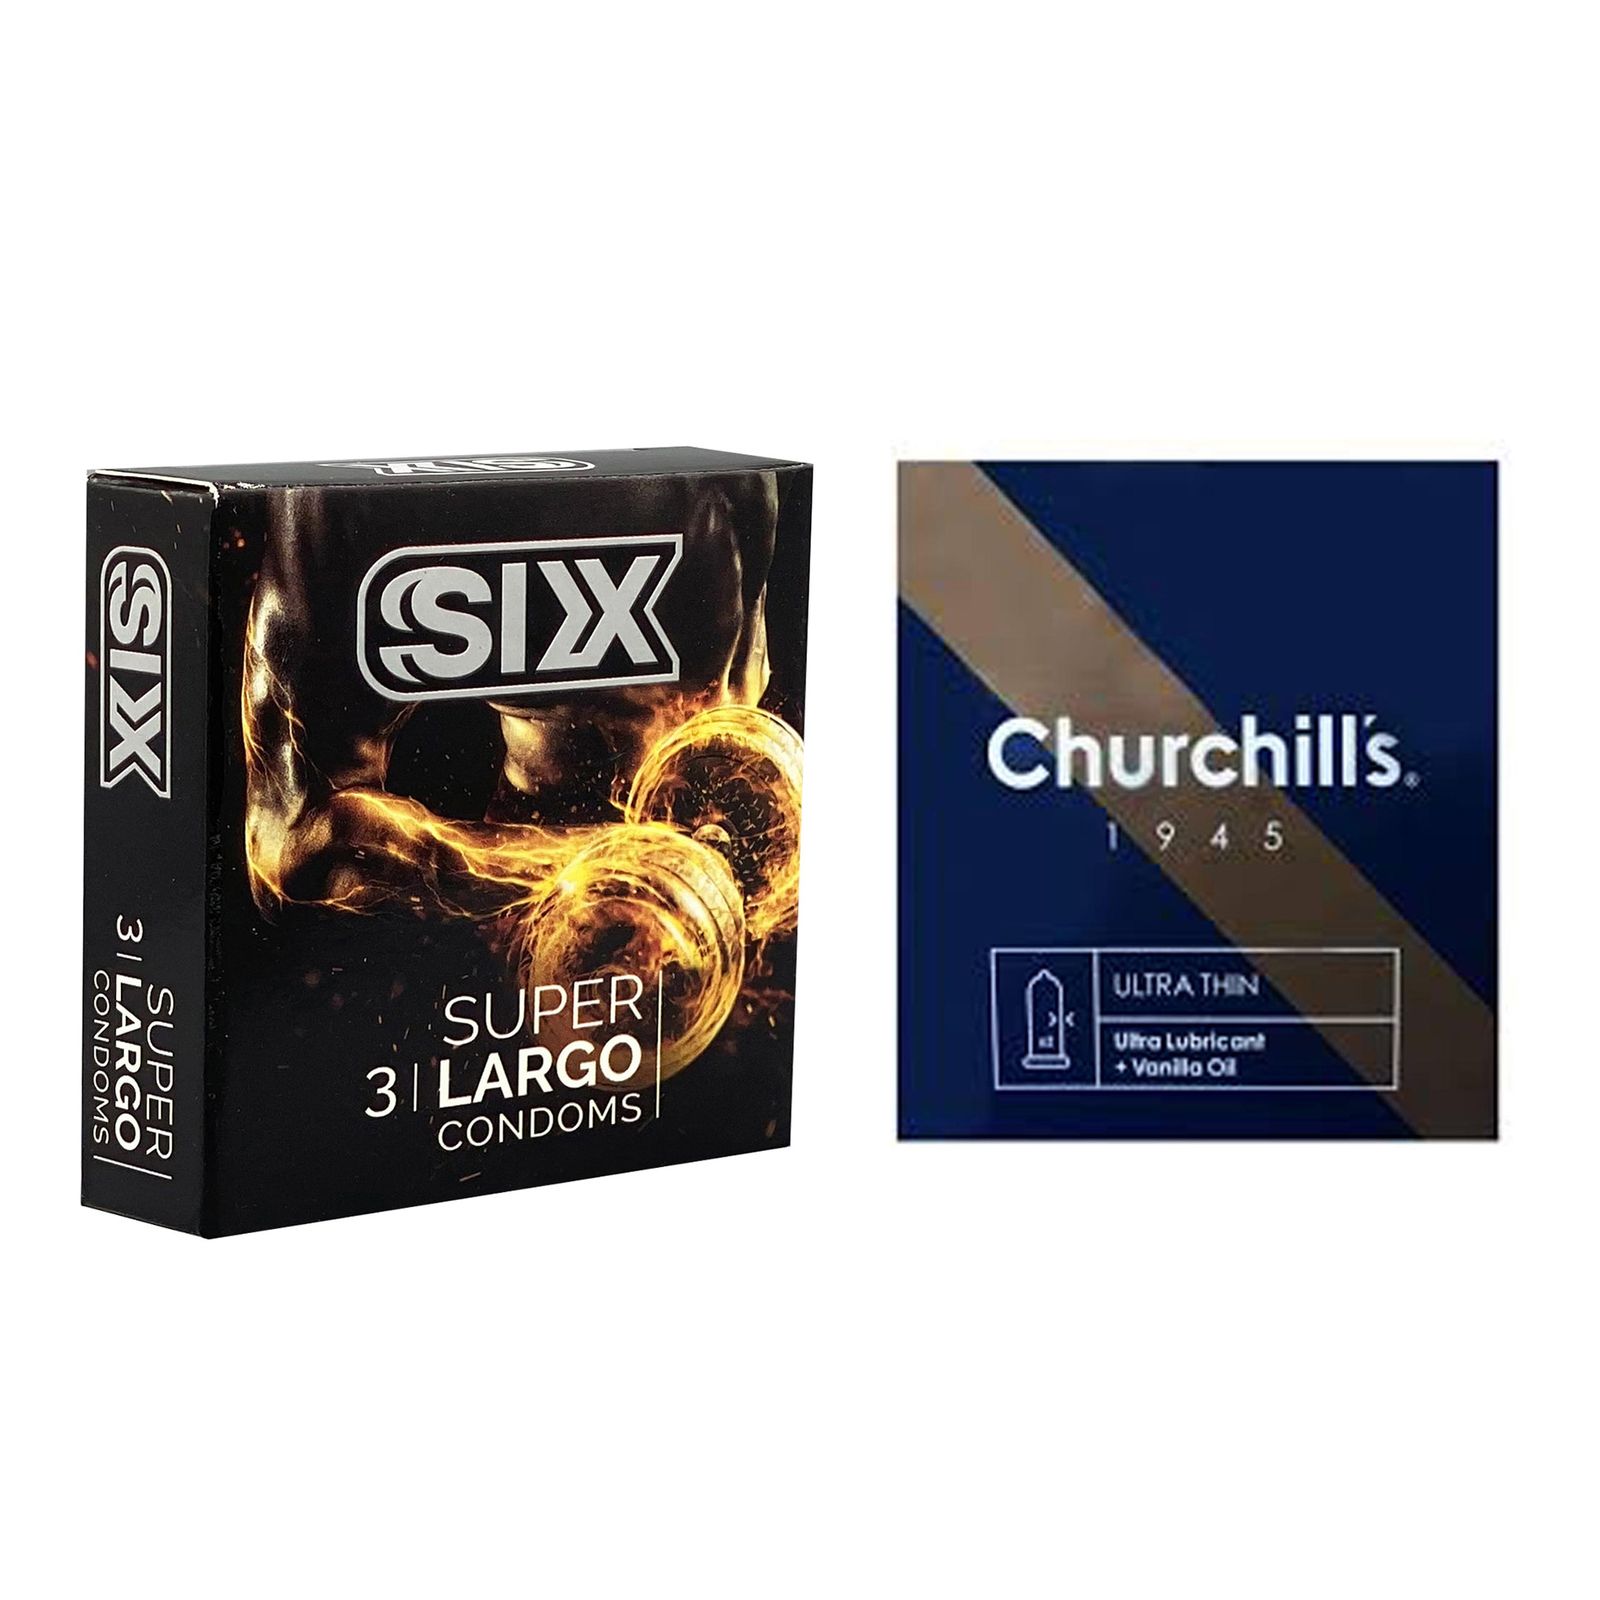 کاندوم چرچیلز مدل Ultra Thin بسته 3 عددی به همراه کاندوم سیکس مدل سفت کننده و بزرگ کننده بسته 3 عددی -  - 2